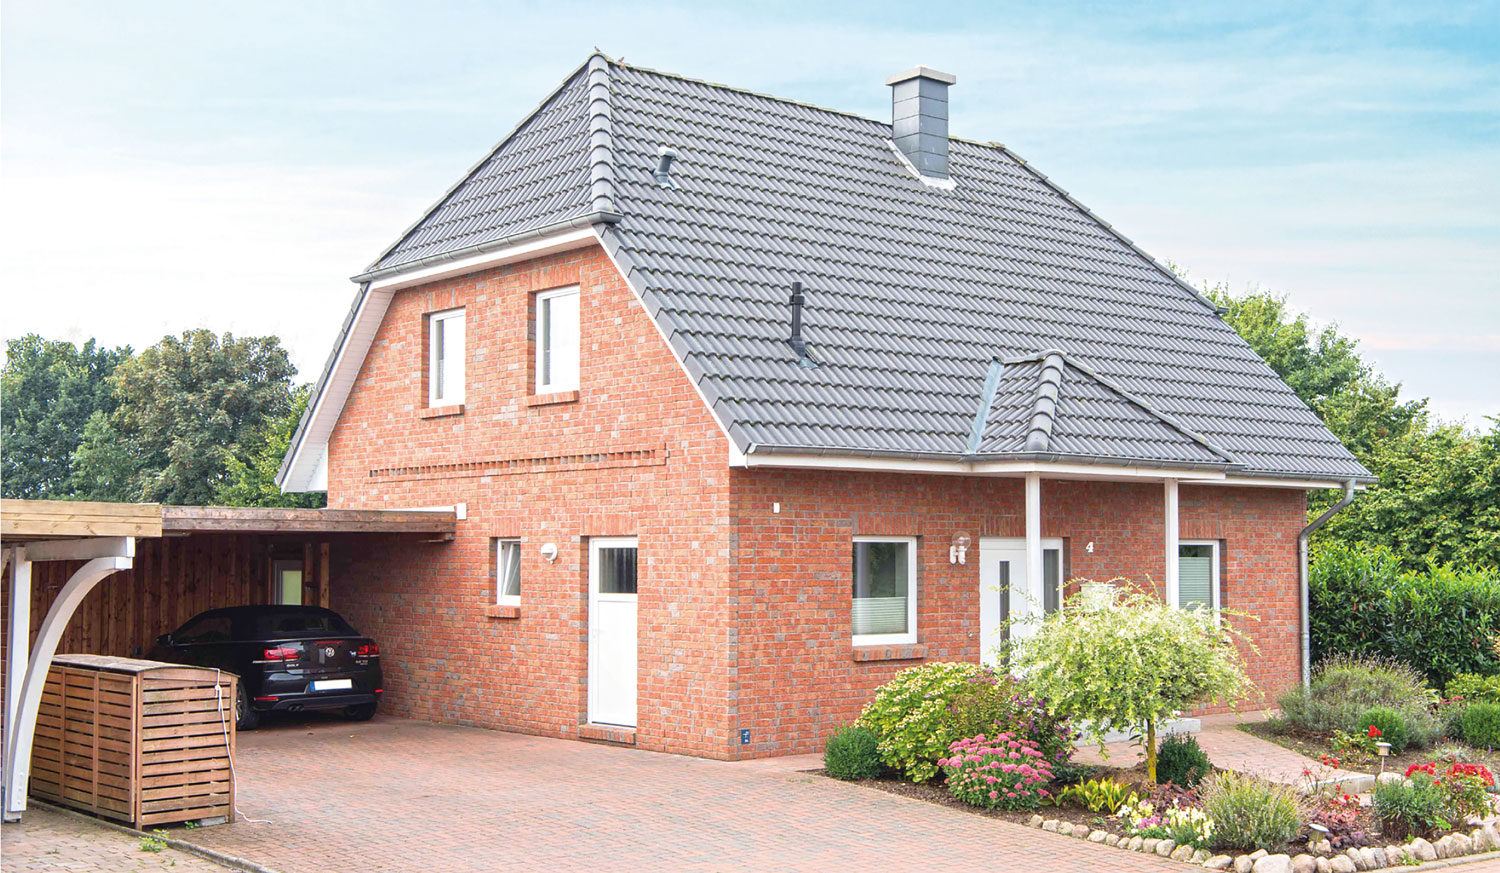 Haus Rieseby-Stein auf Stein gemauert, roter Klinkerstein-Satteldach